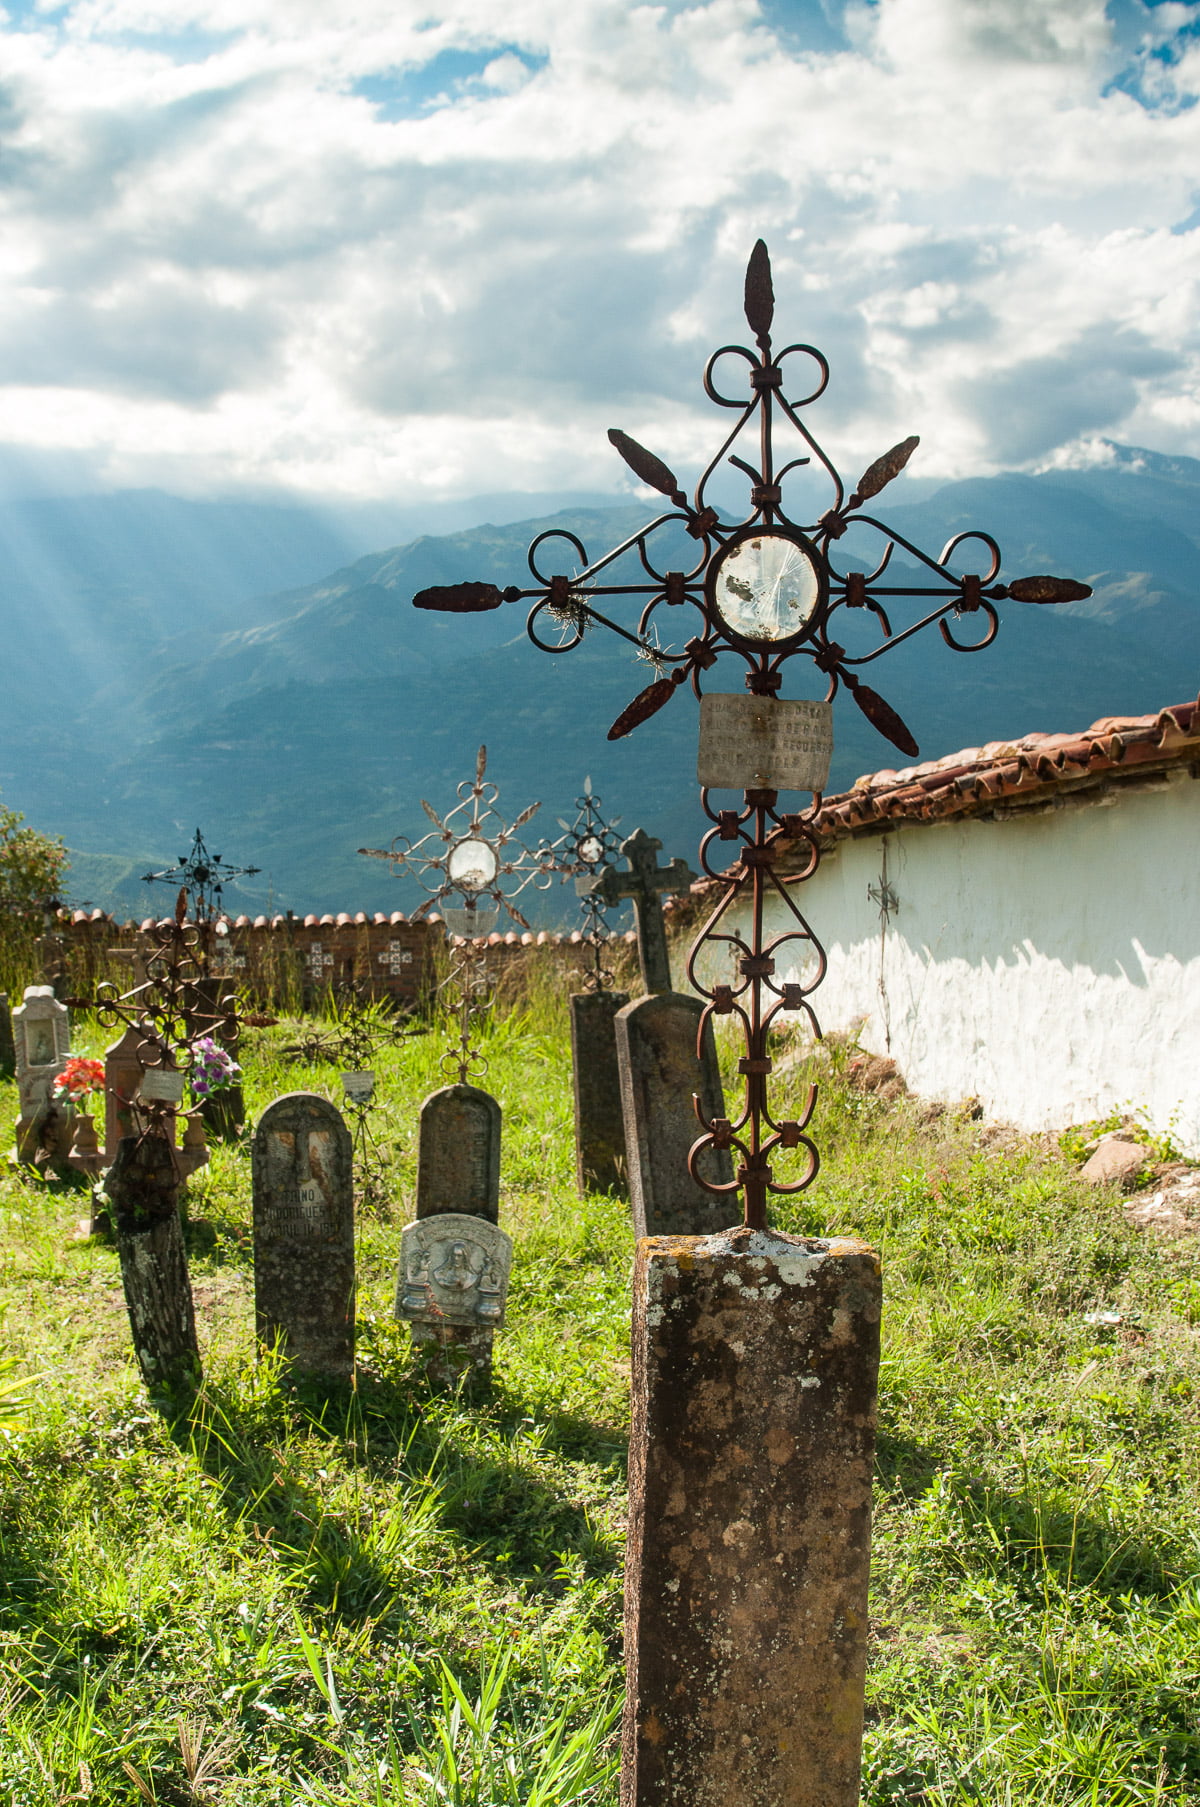 Le cimetière de guane en Colombie